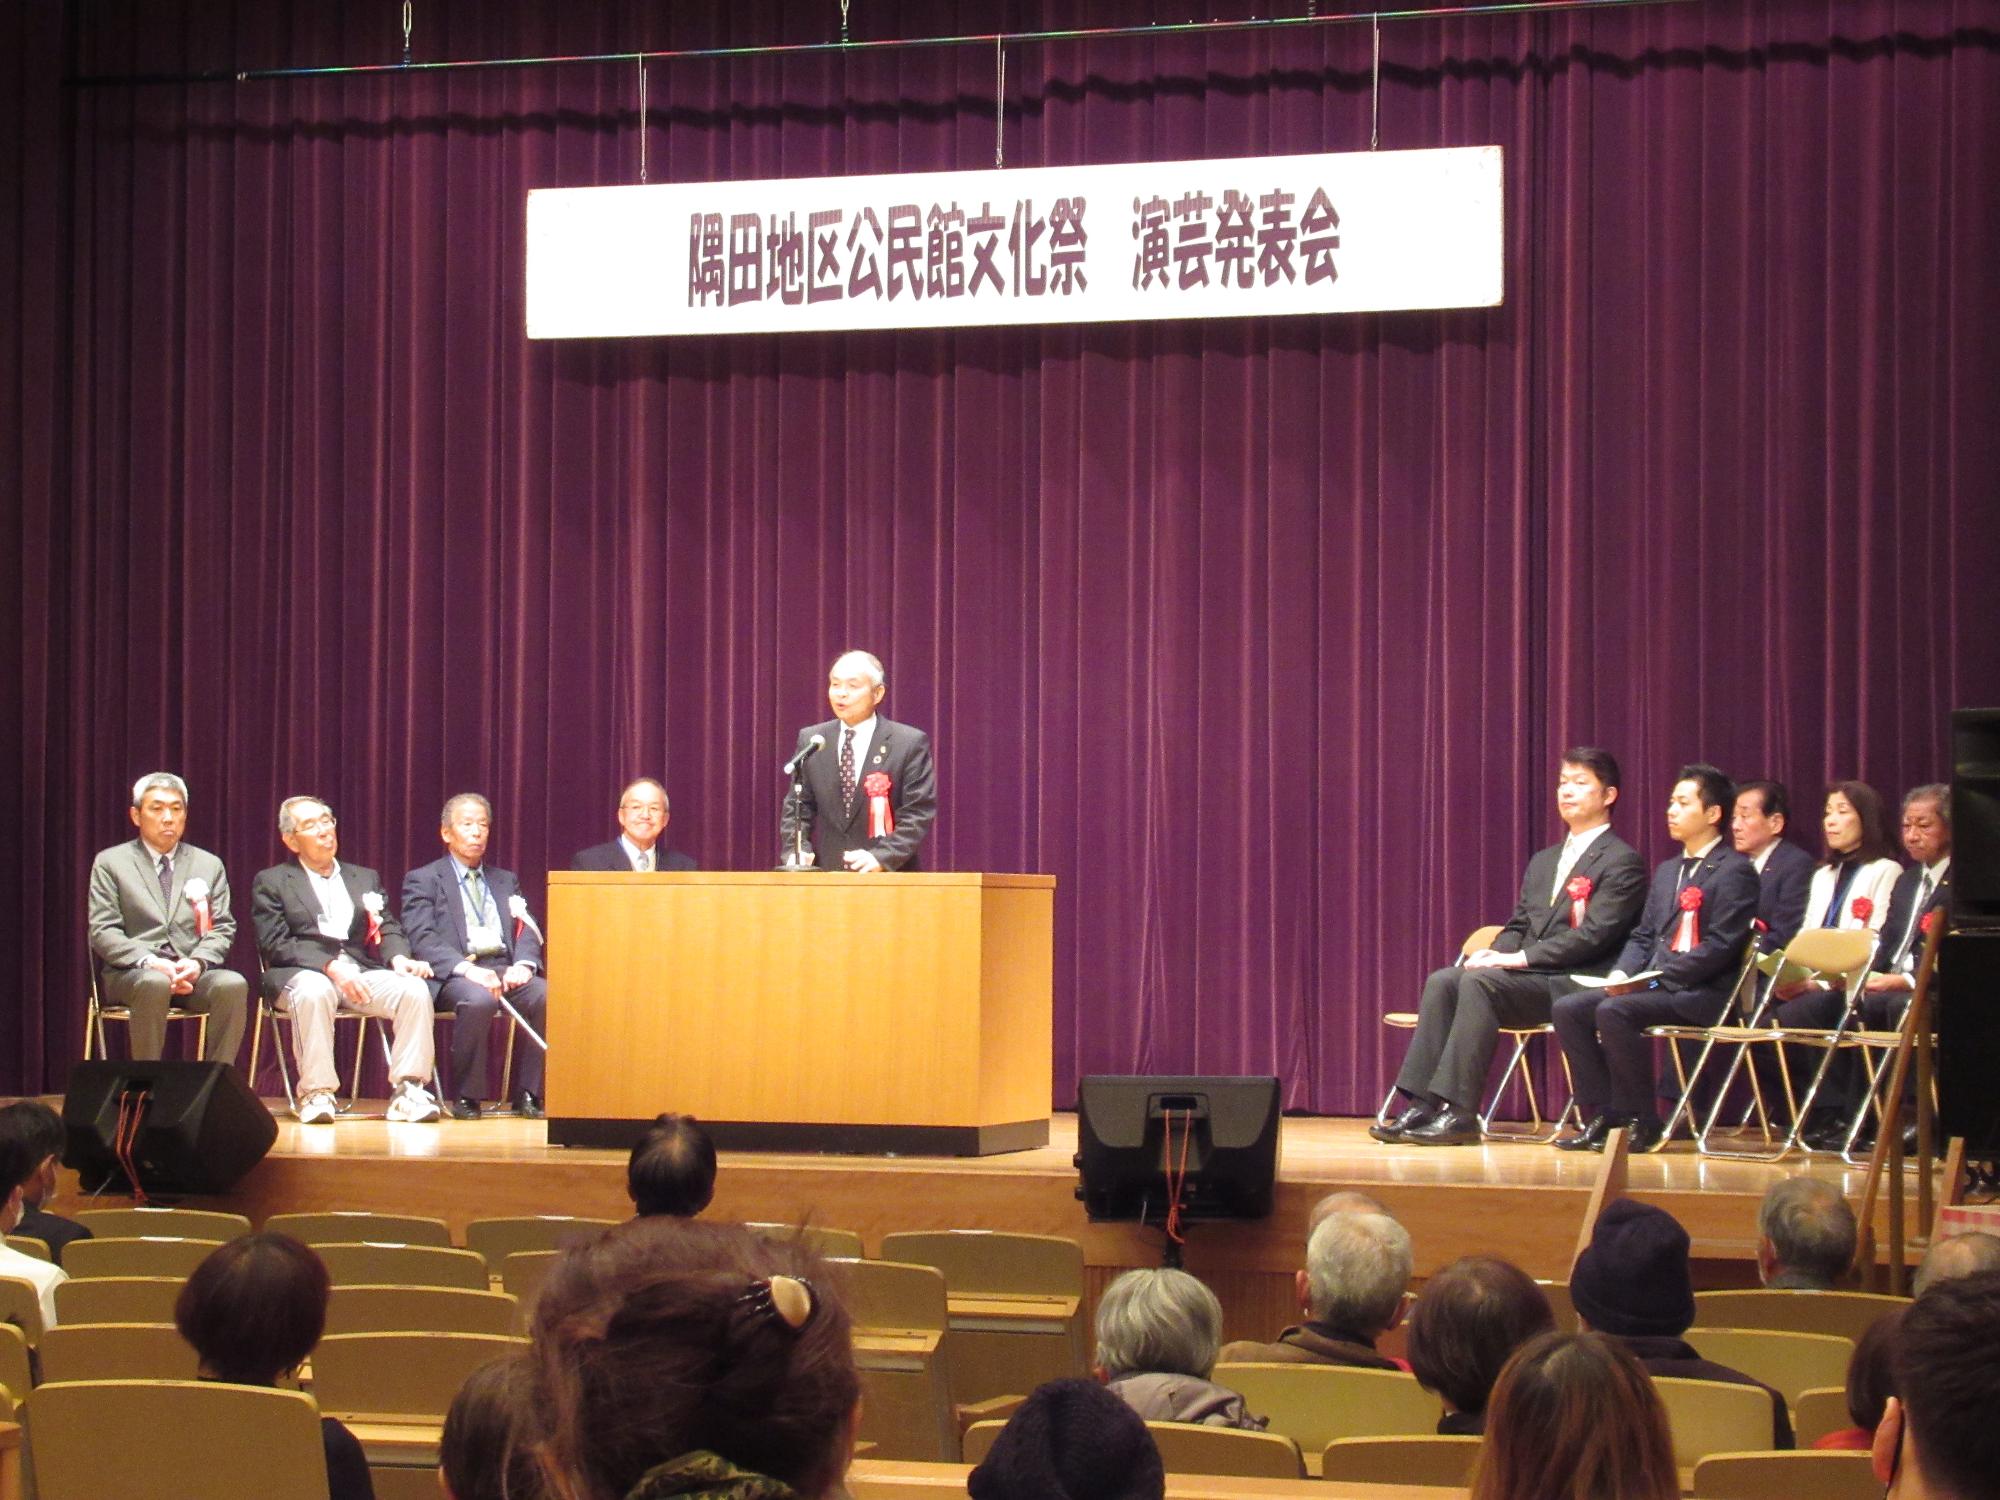 隅田地区公民館文化祭開会式